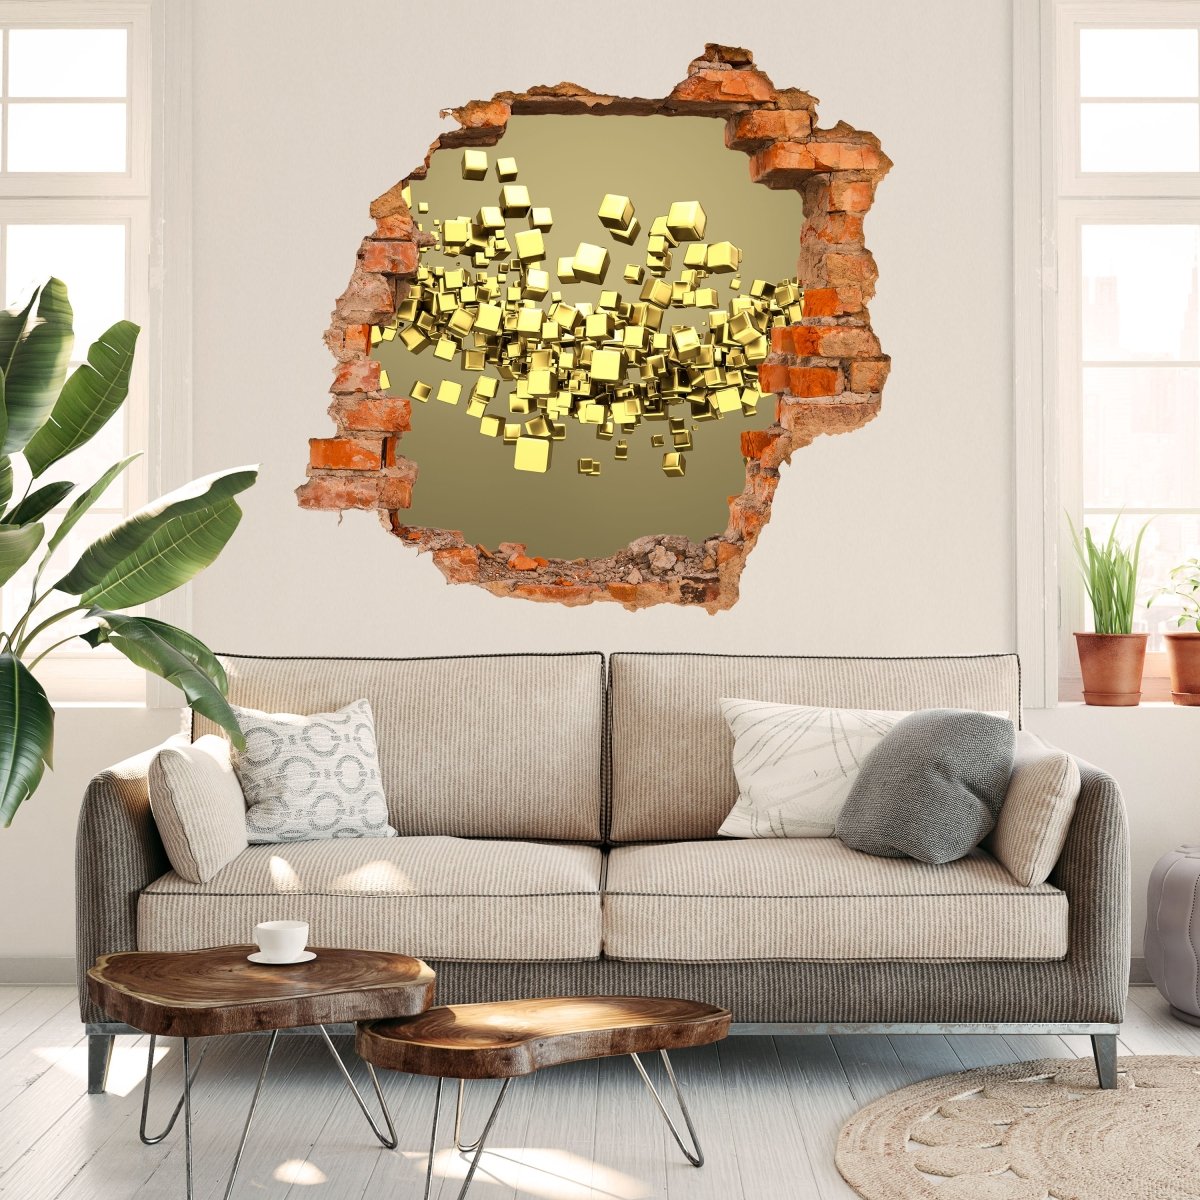 3D Wall Sticker Golden Cubes Background - Wall Decal M0765